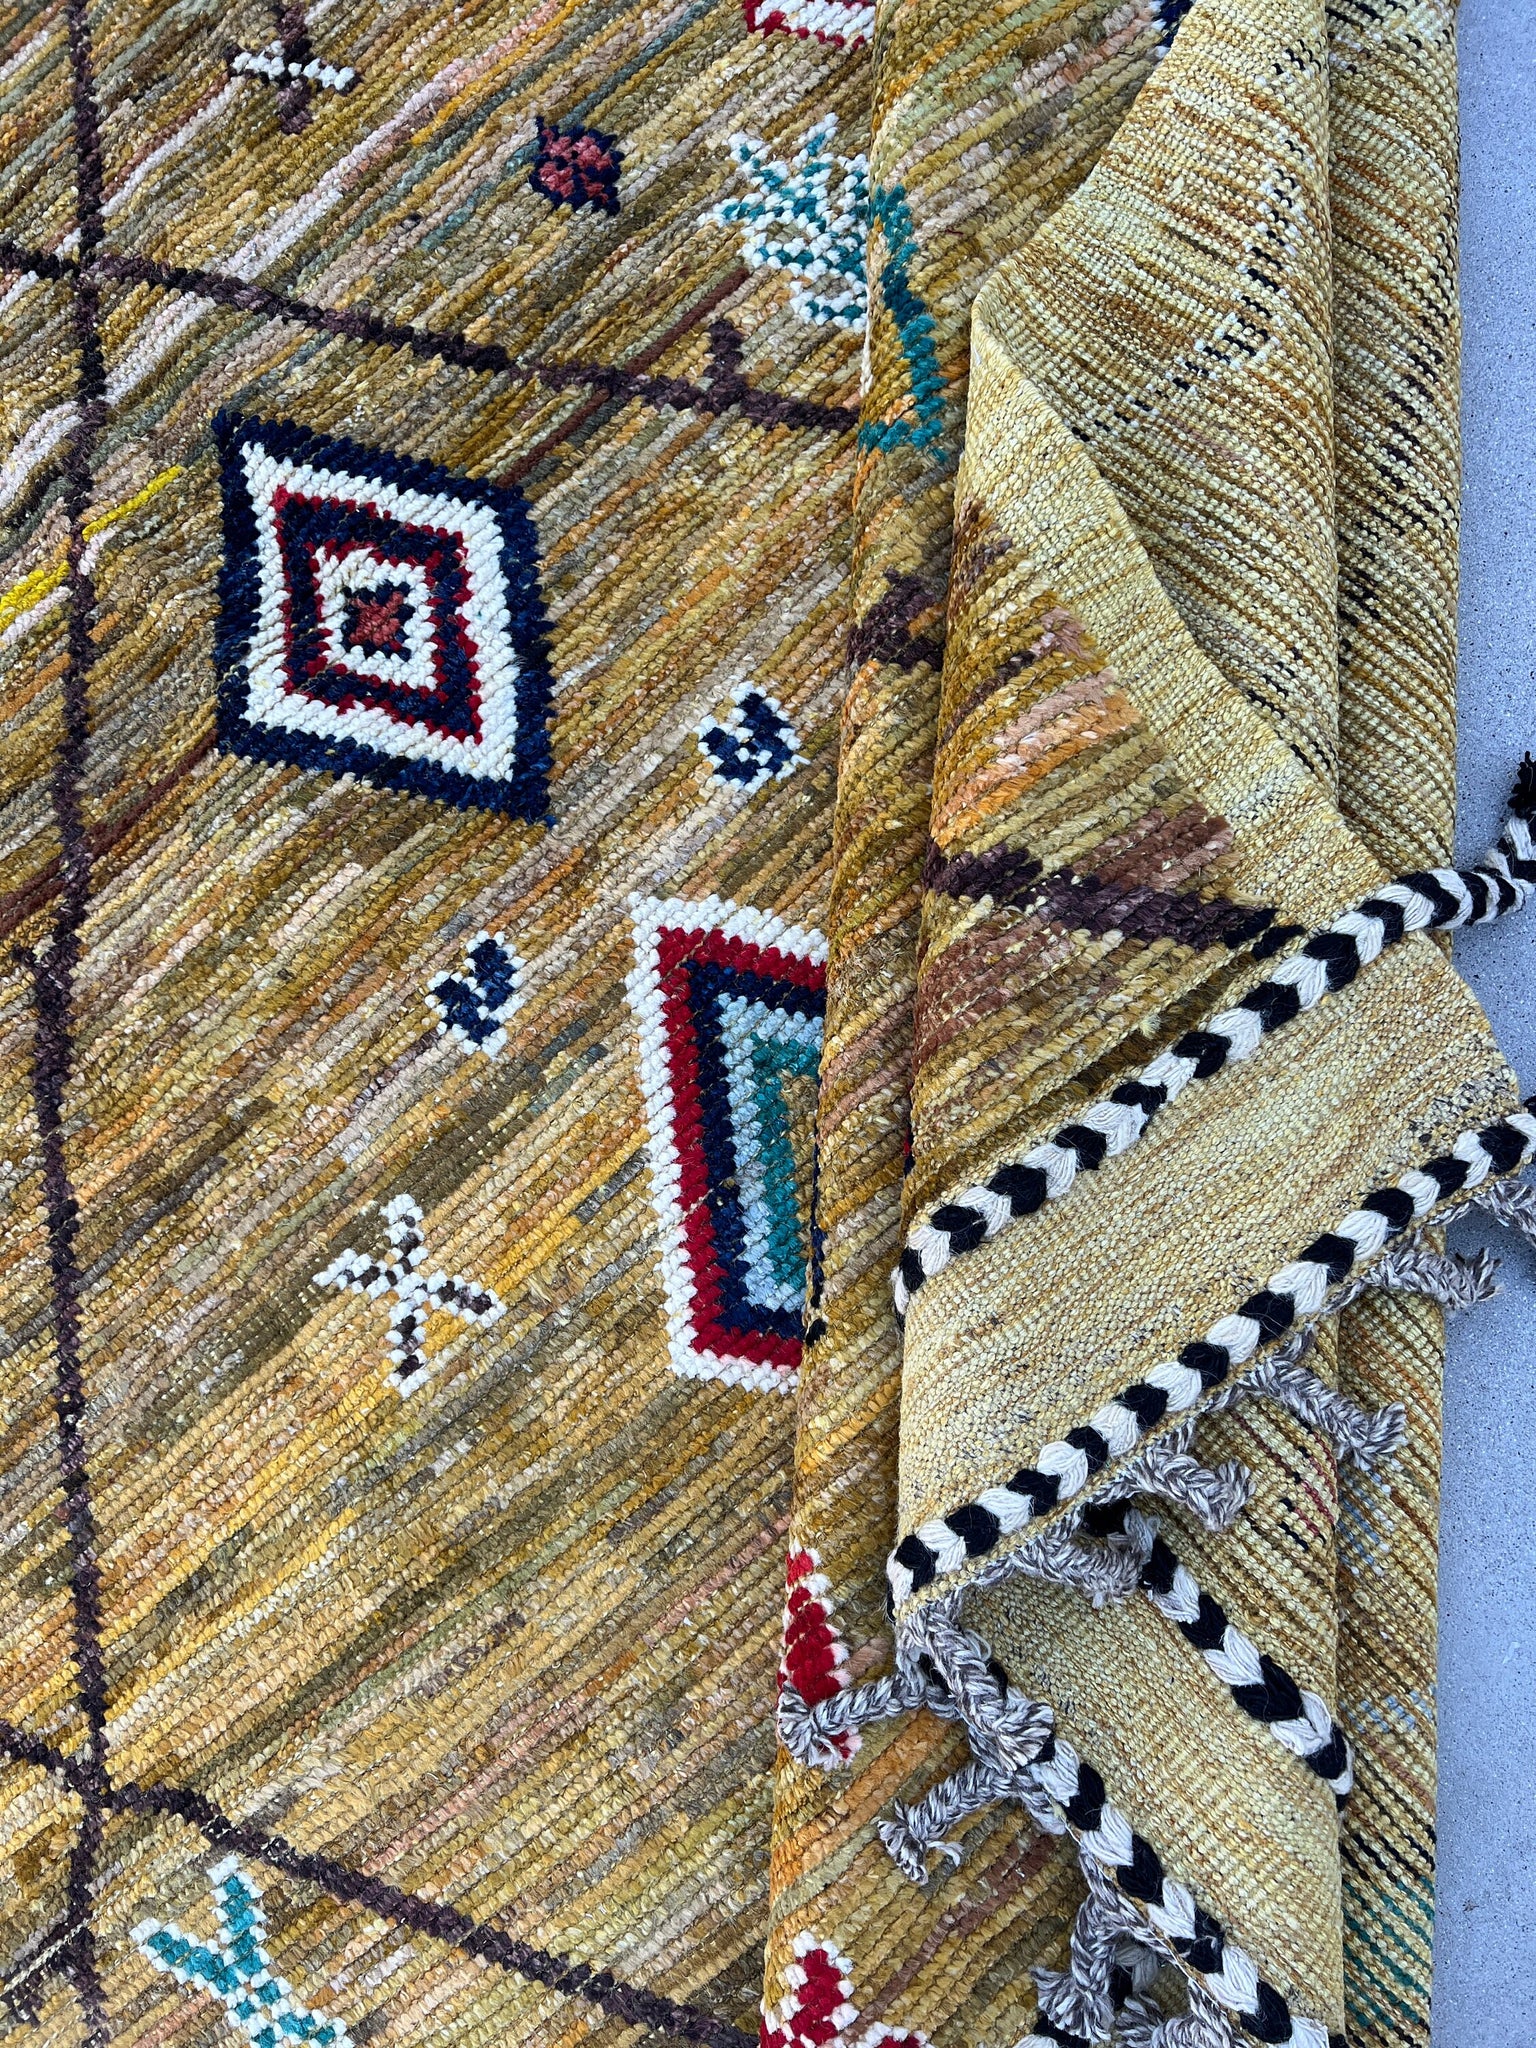 9x13 Handmade Afghan Moroccan Rug | Mustard Golden Yellow Brown Navy Blue Red White Teal Black | Berber Beni Mrirt Boujad Flokati Plush Wool